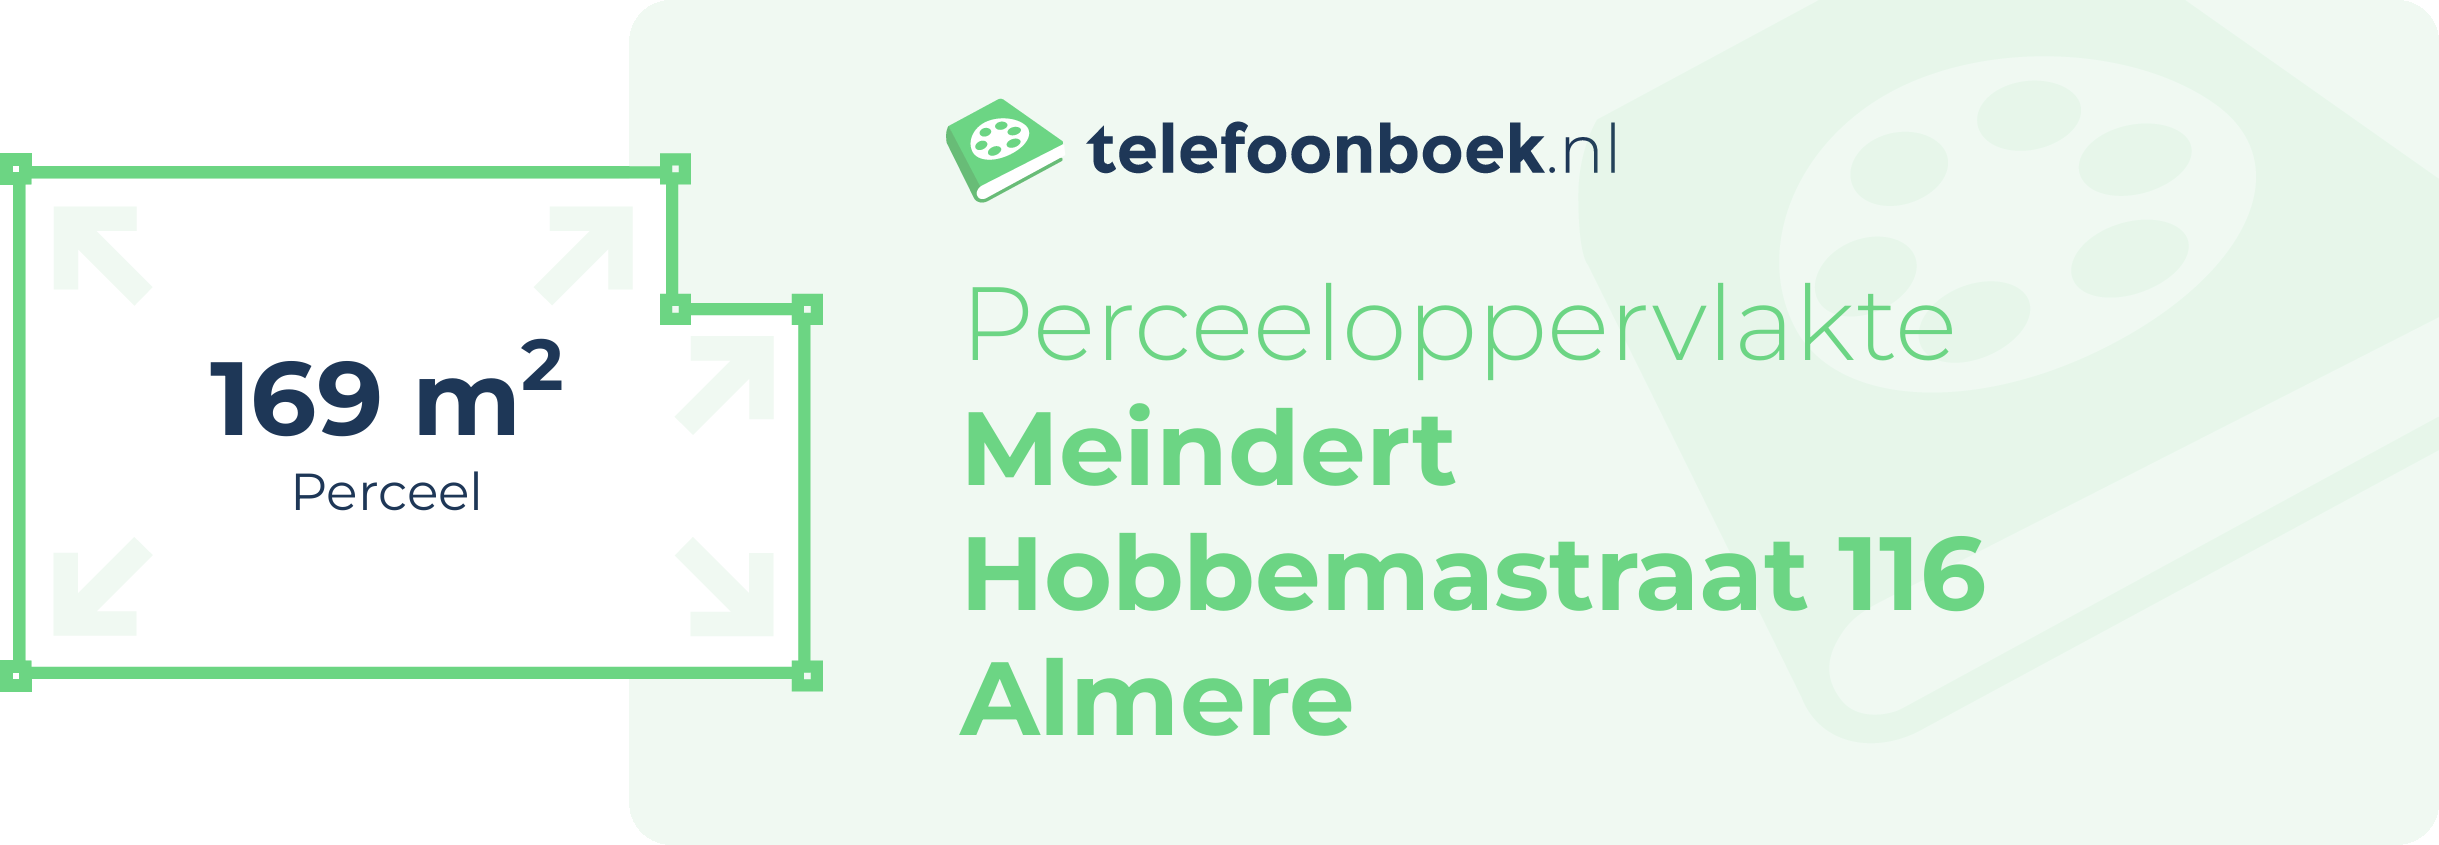 Perceeloppervlakte Meindert Hobbemastraat 116 Almere